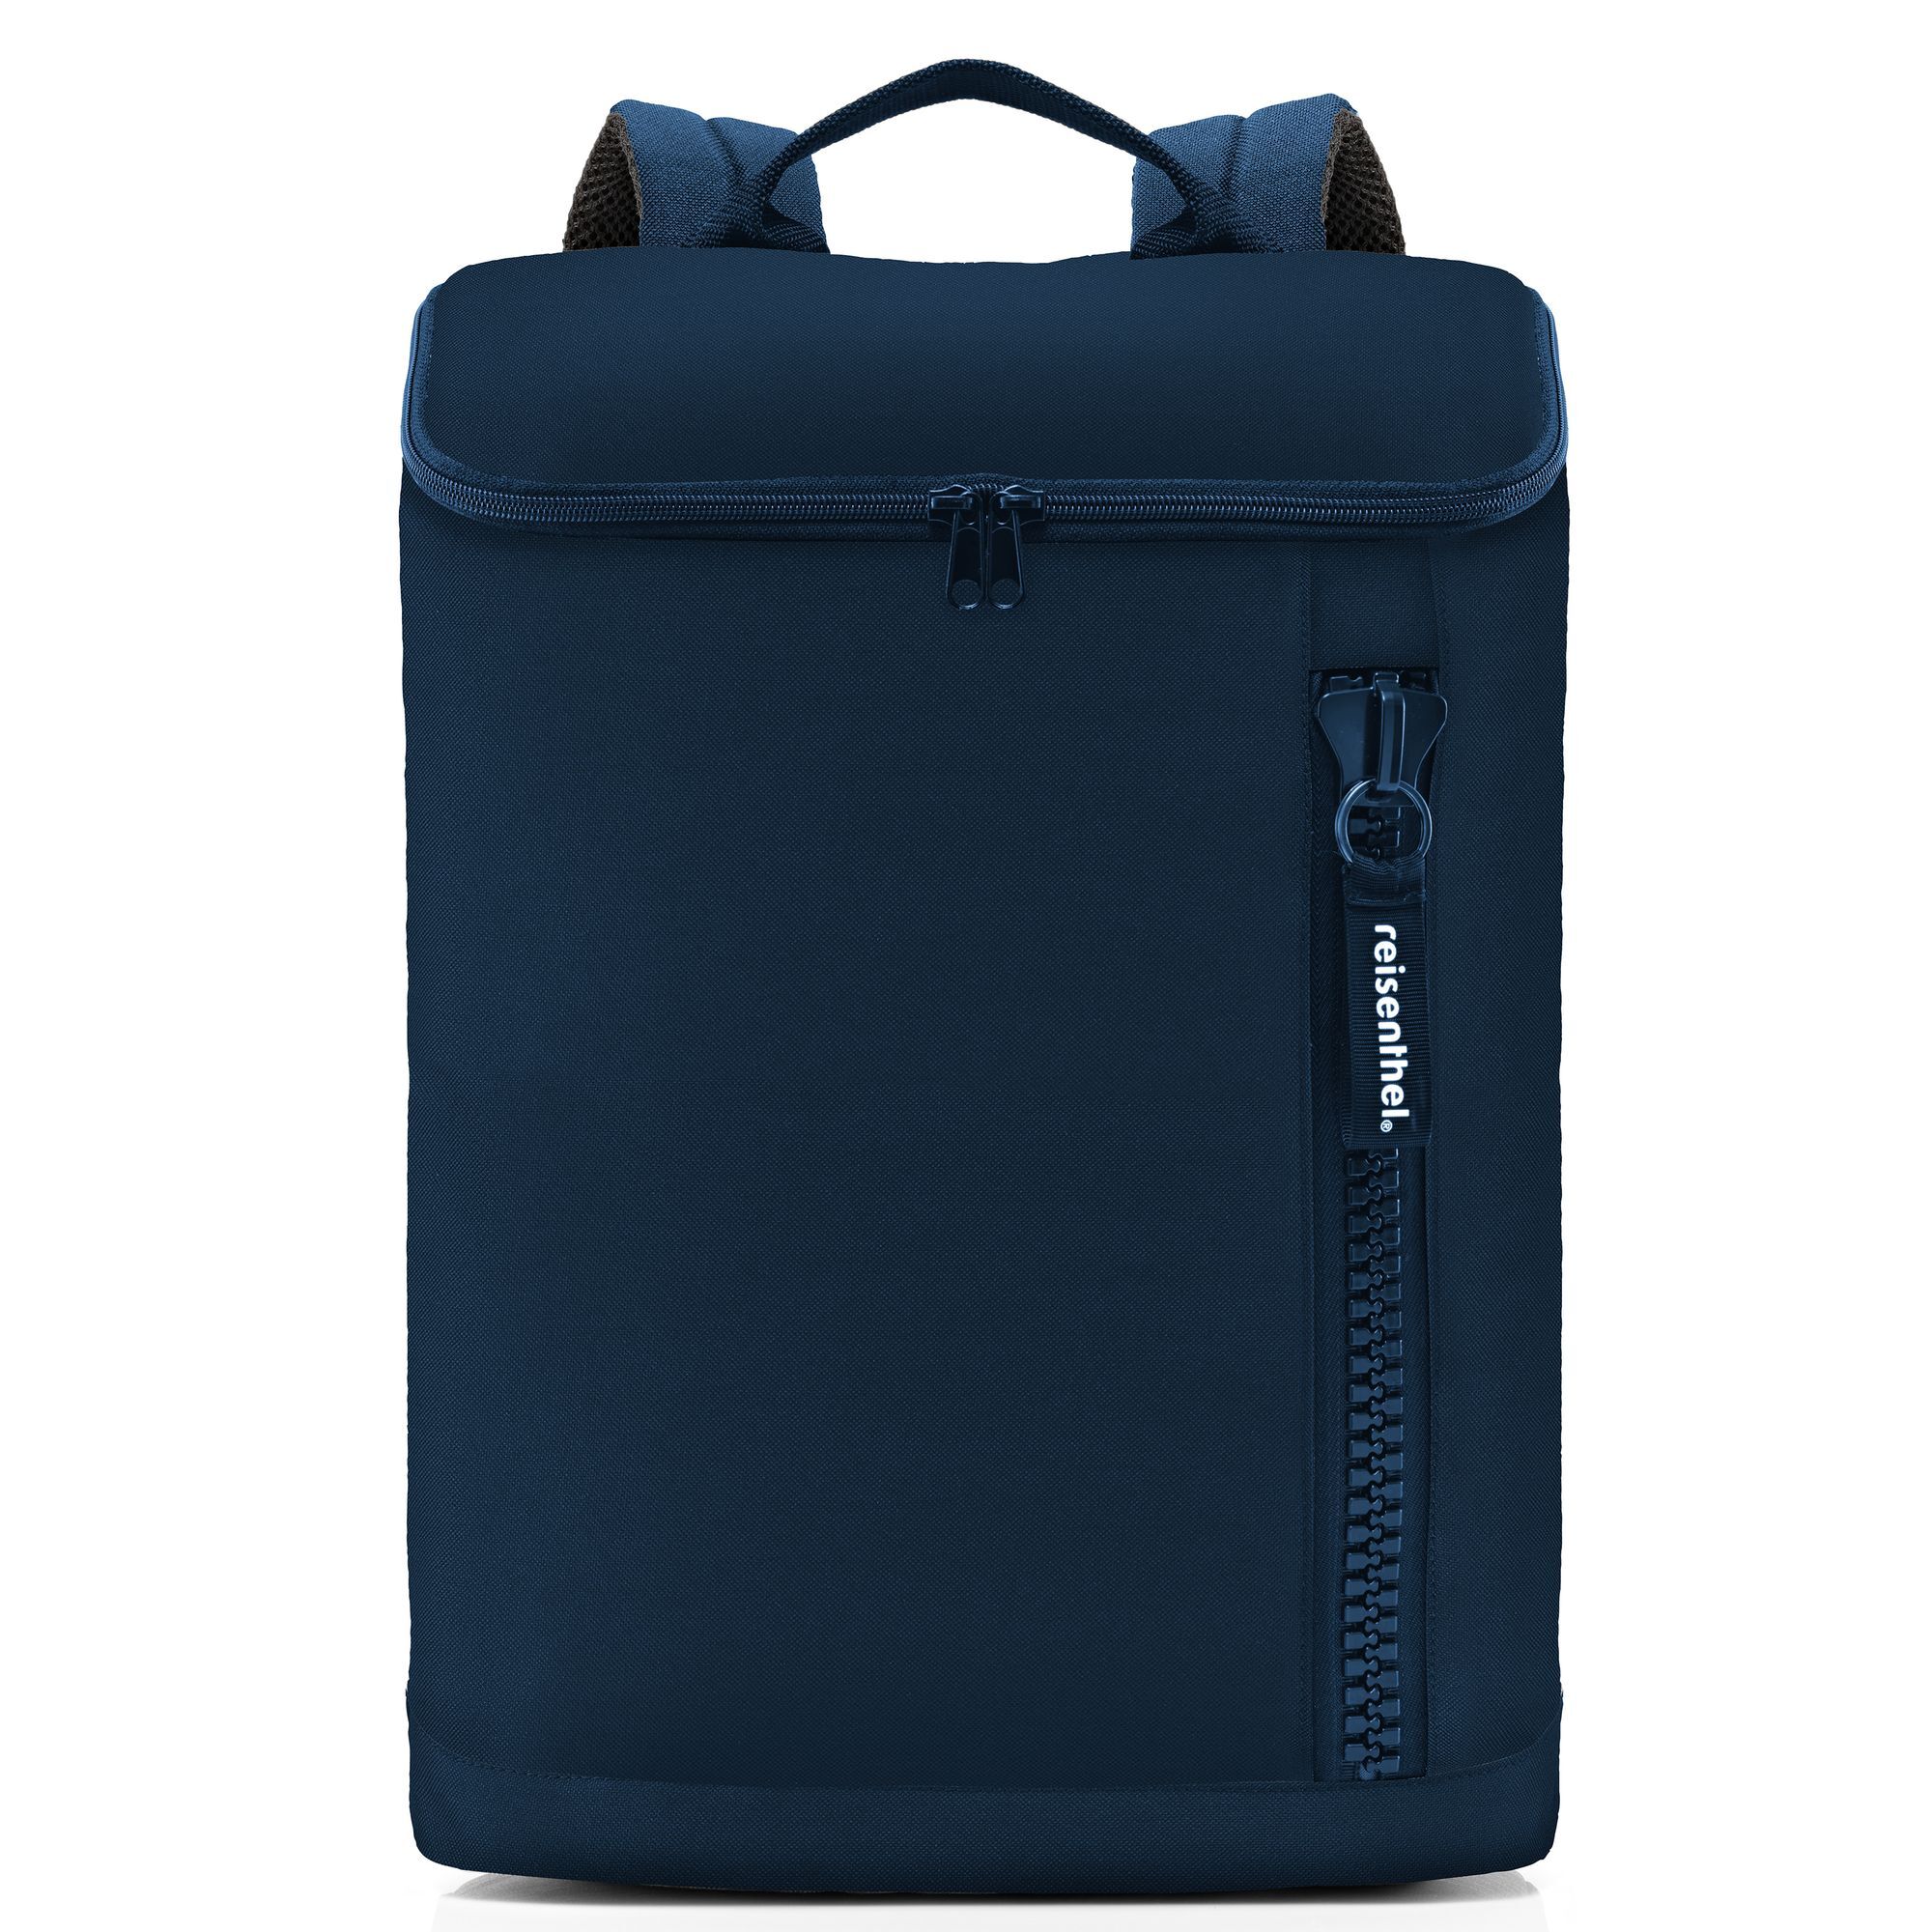 Рюкзак Reisenthel Overnighter 41 cm Laptopfach, темно синий рюкзак ogio bandit pro 51 cm laptopfach темно синий